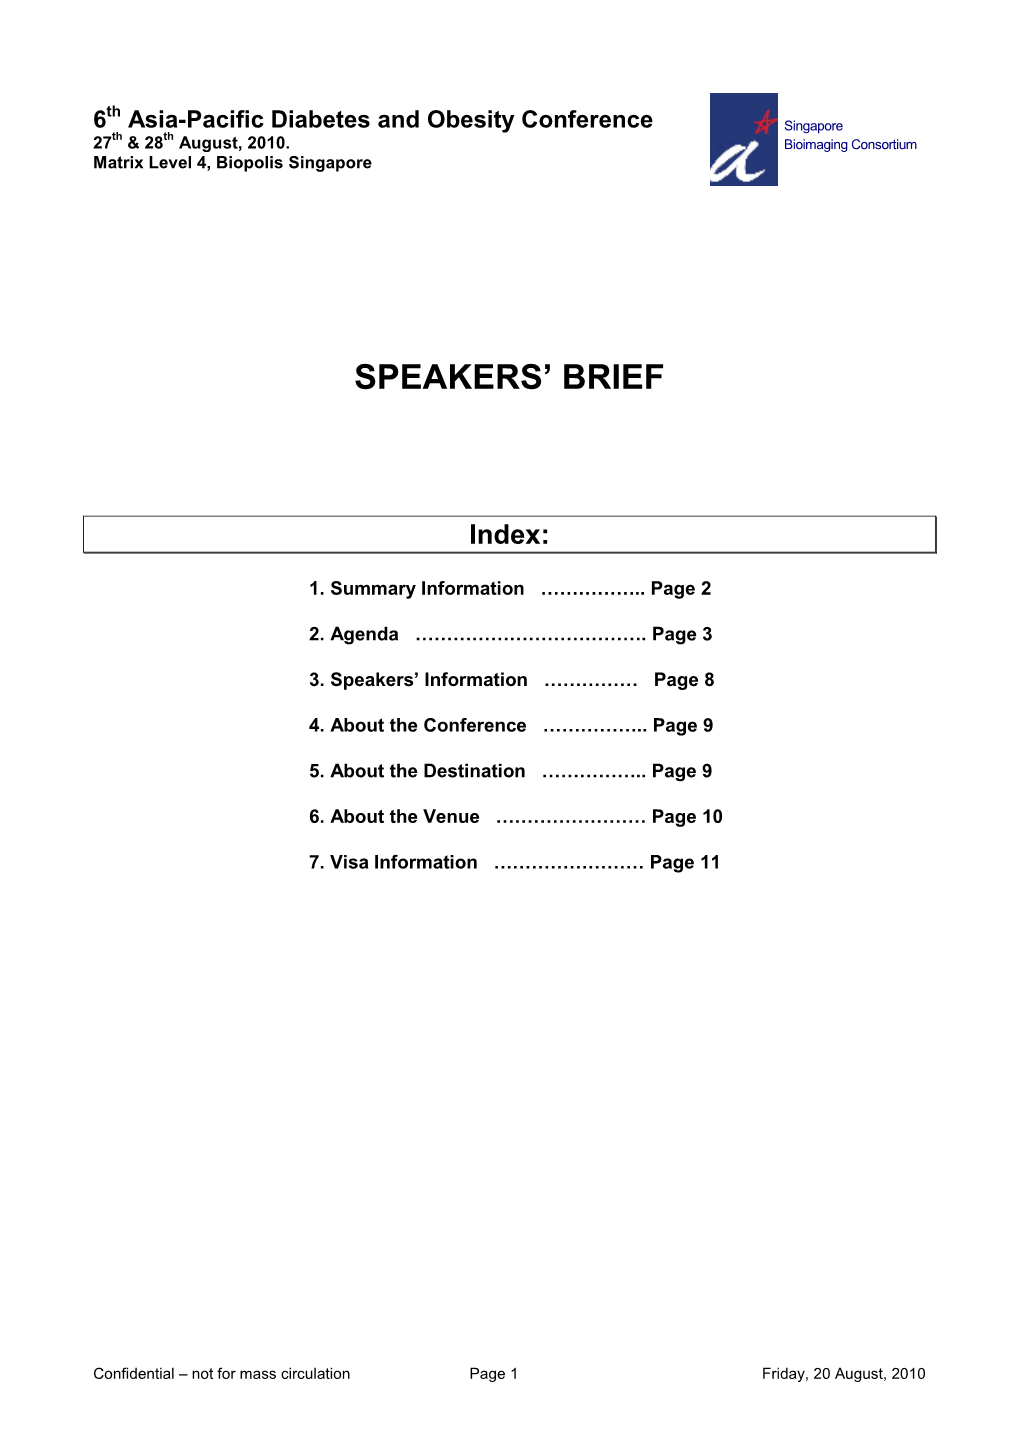 Speakers' Brief